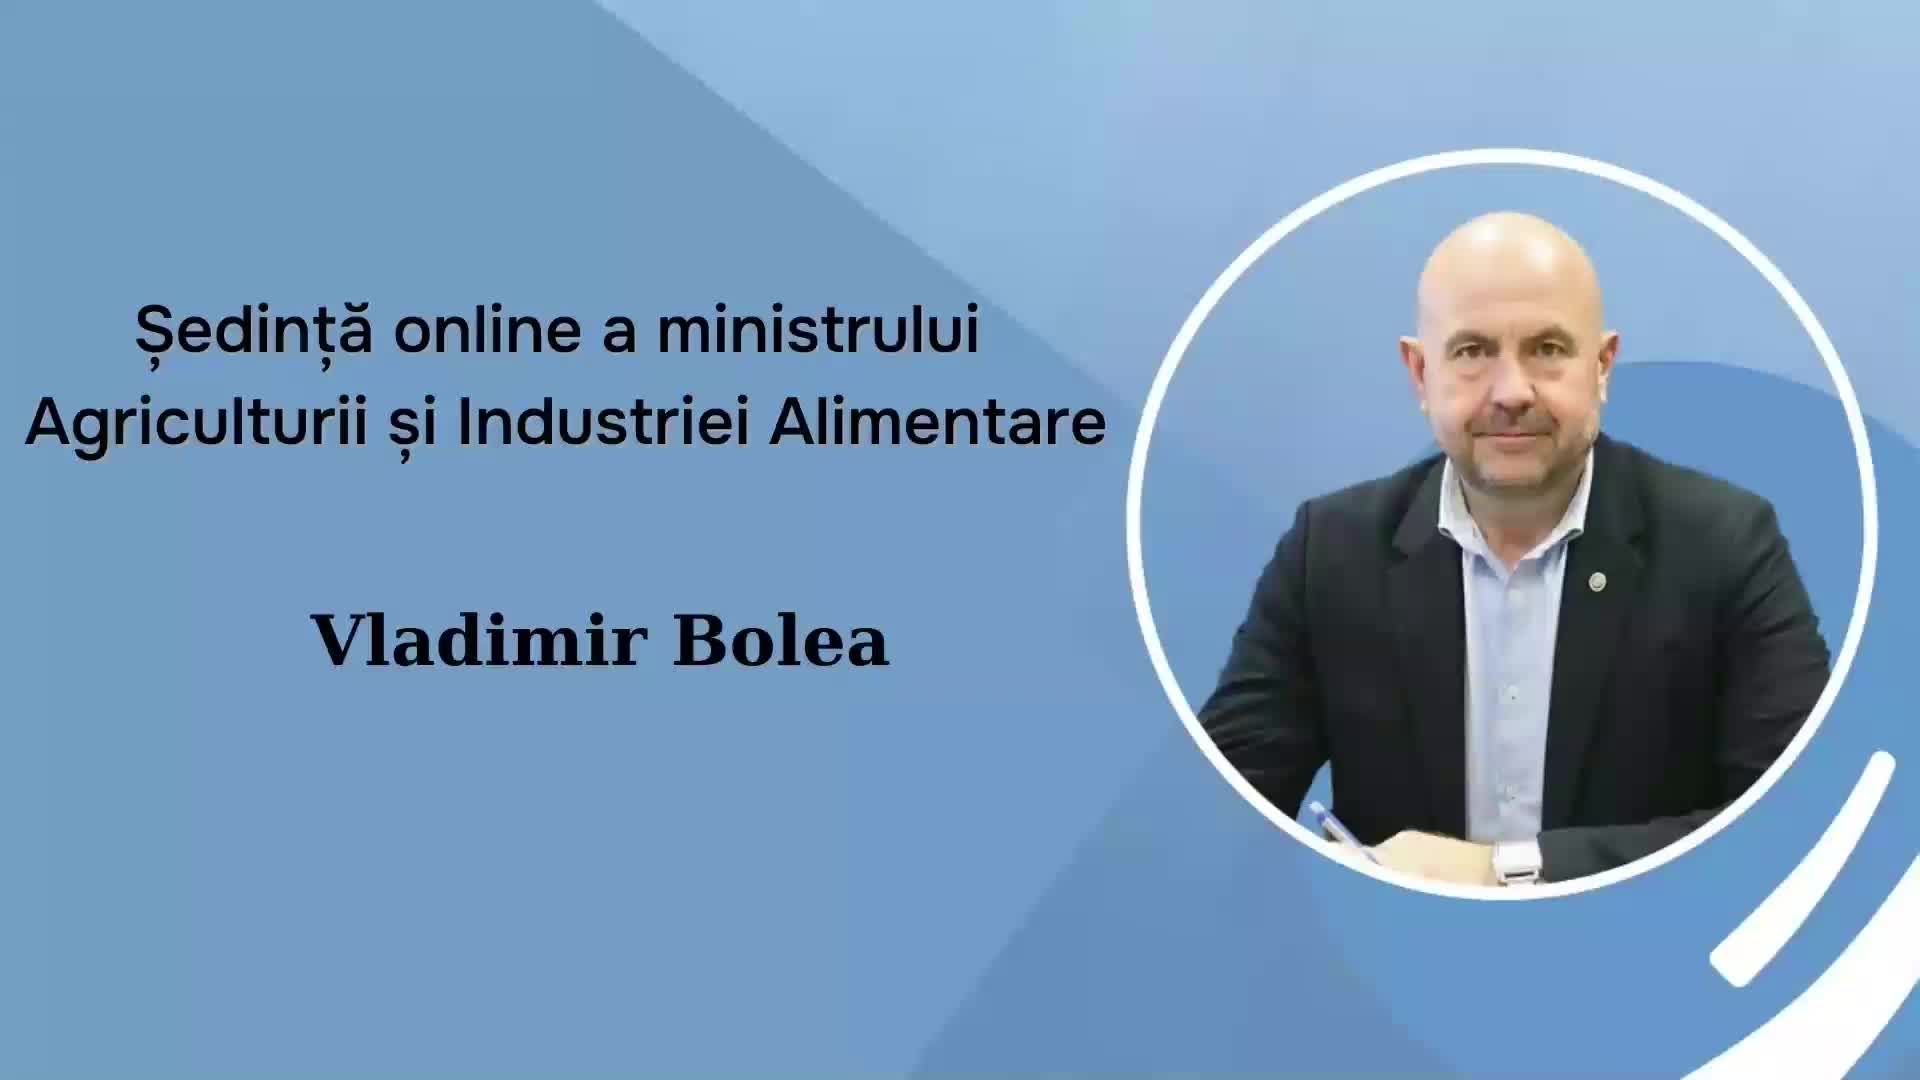 Ședință online a ministrului Agriculturii și Industriei Alimentare, Vladimir Bolea, cu șefii direcțiilor agricole raionale